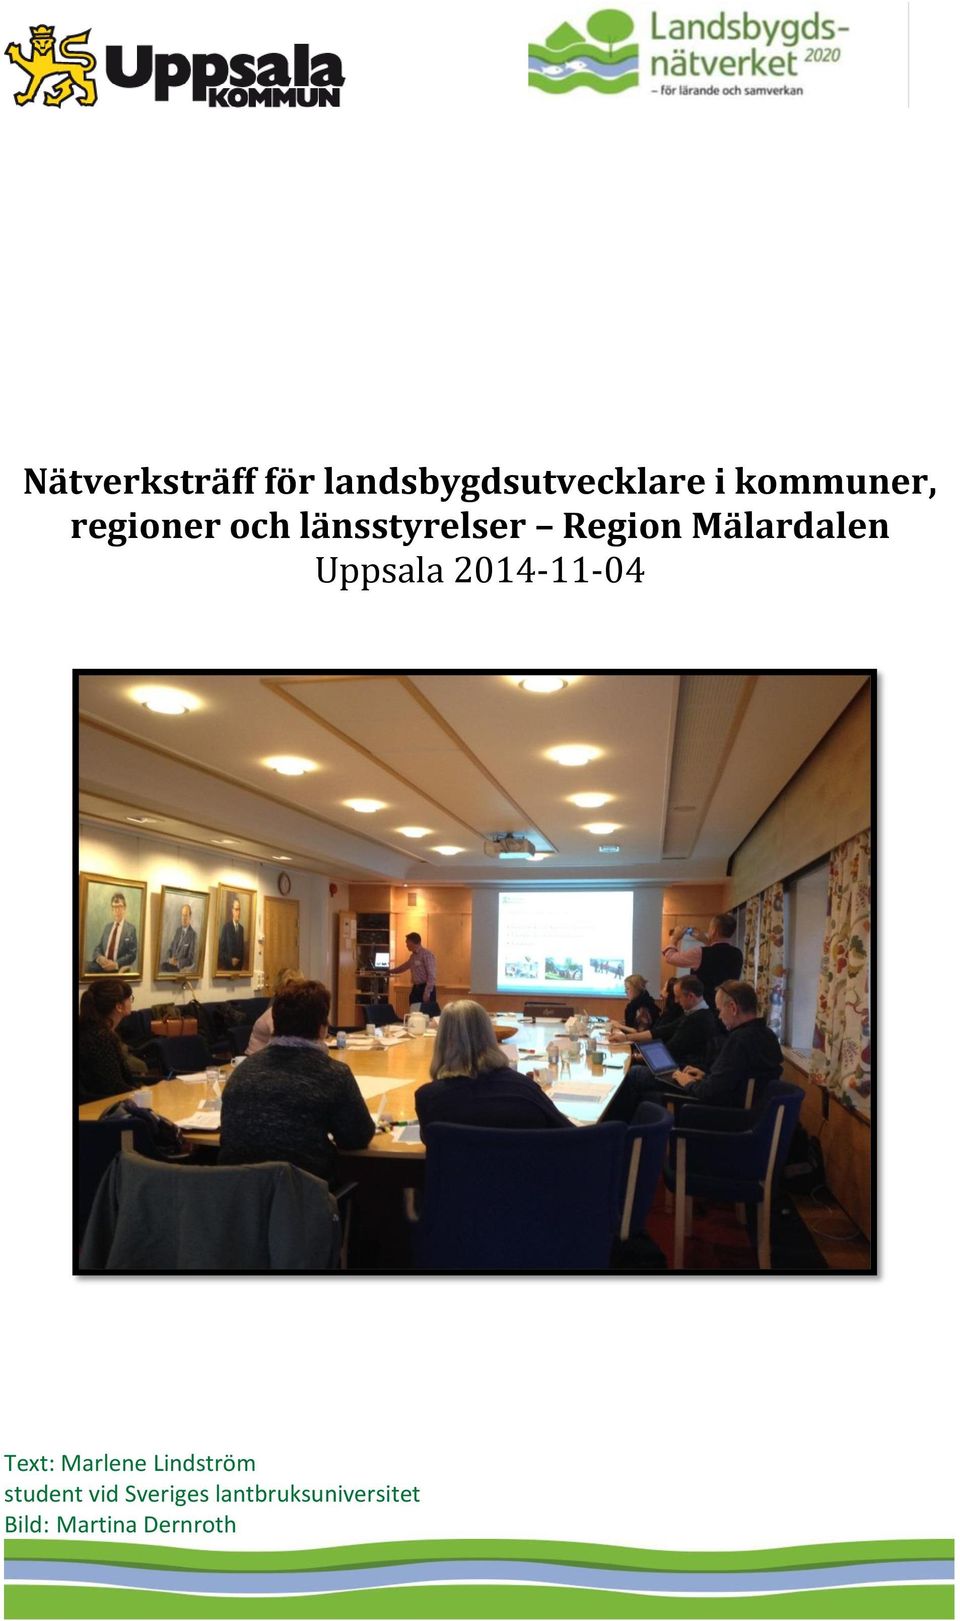 Uppsala 2014-11-04 Text: Marlene Lindström student